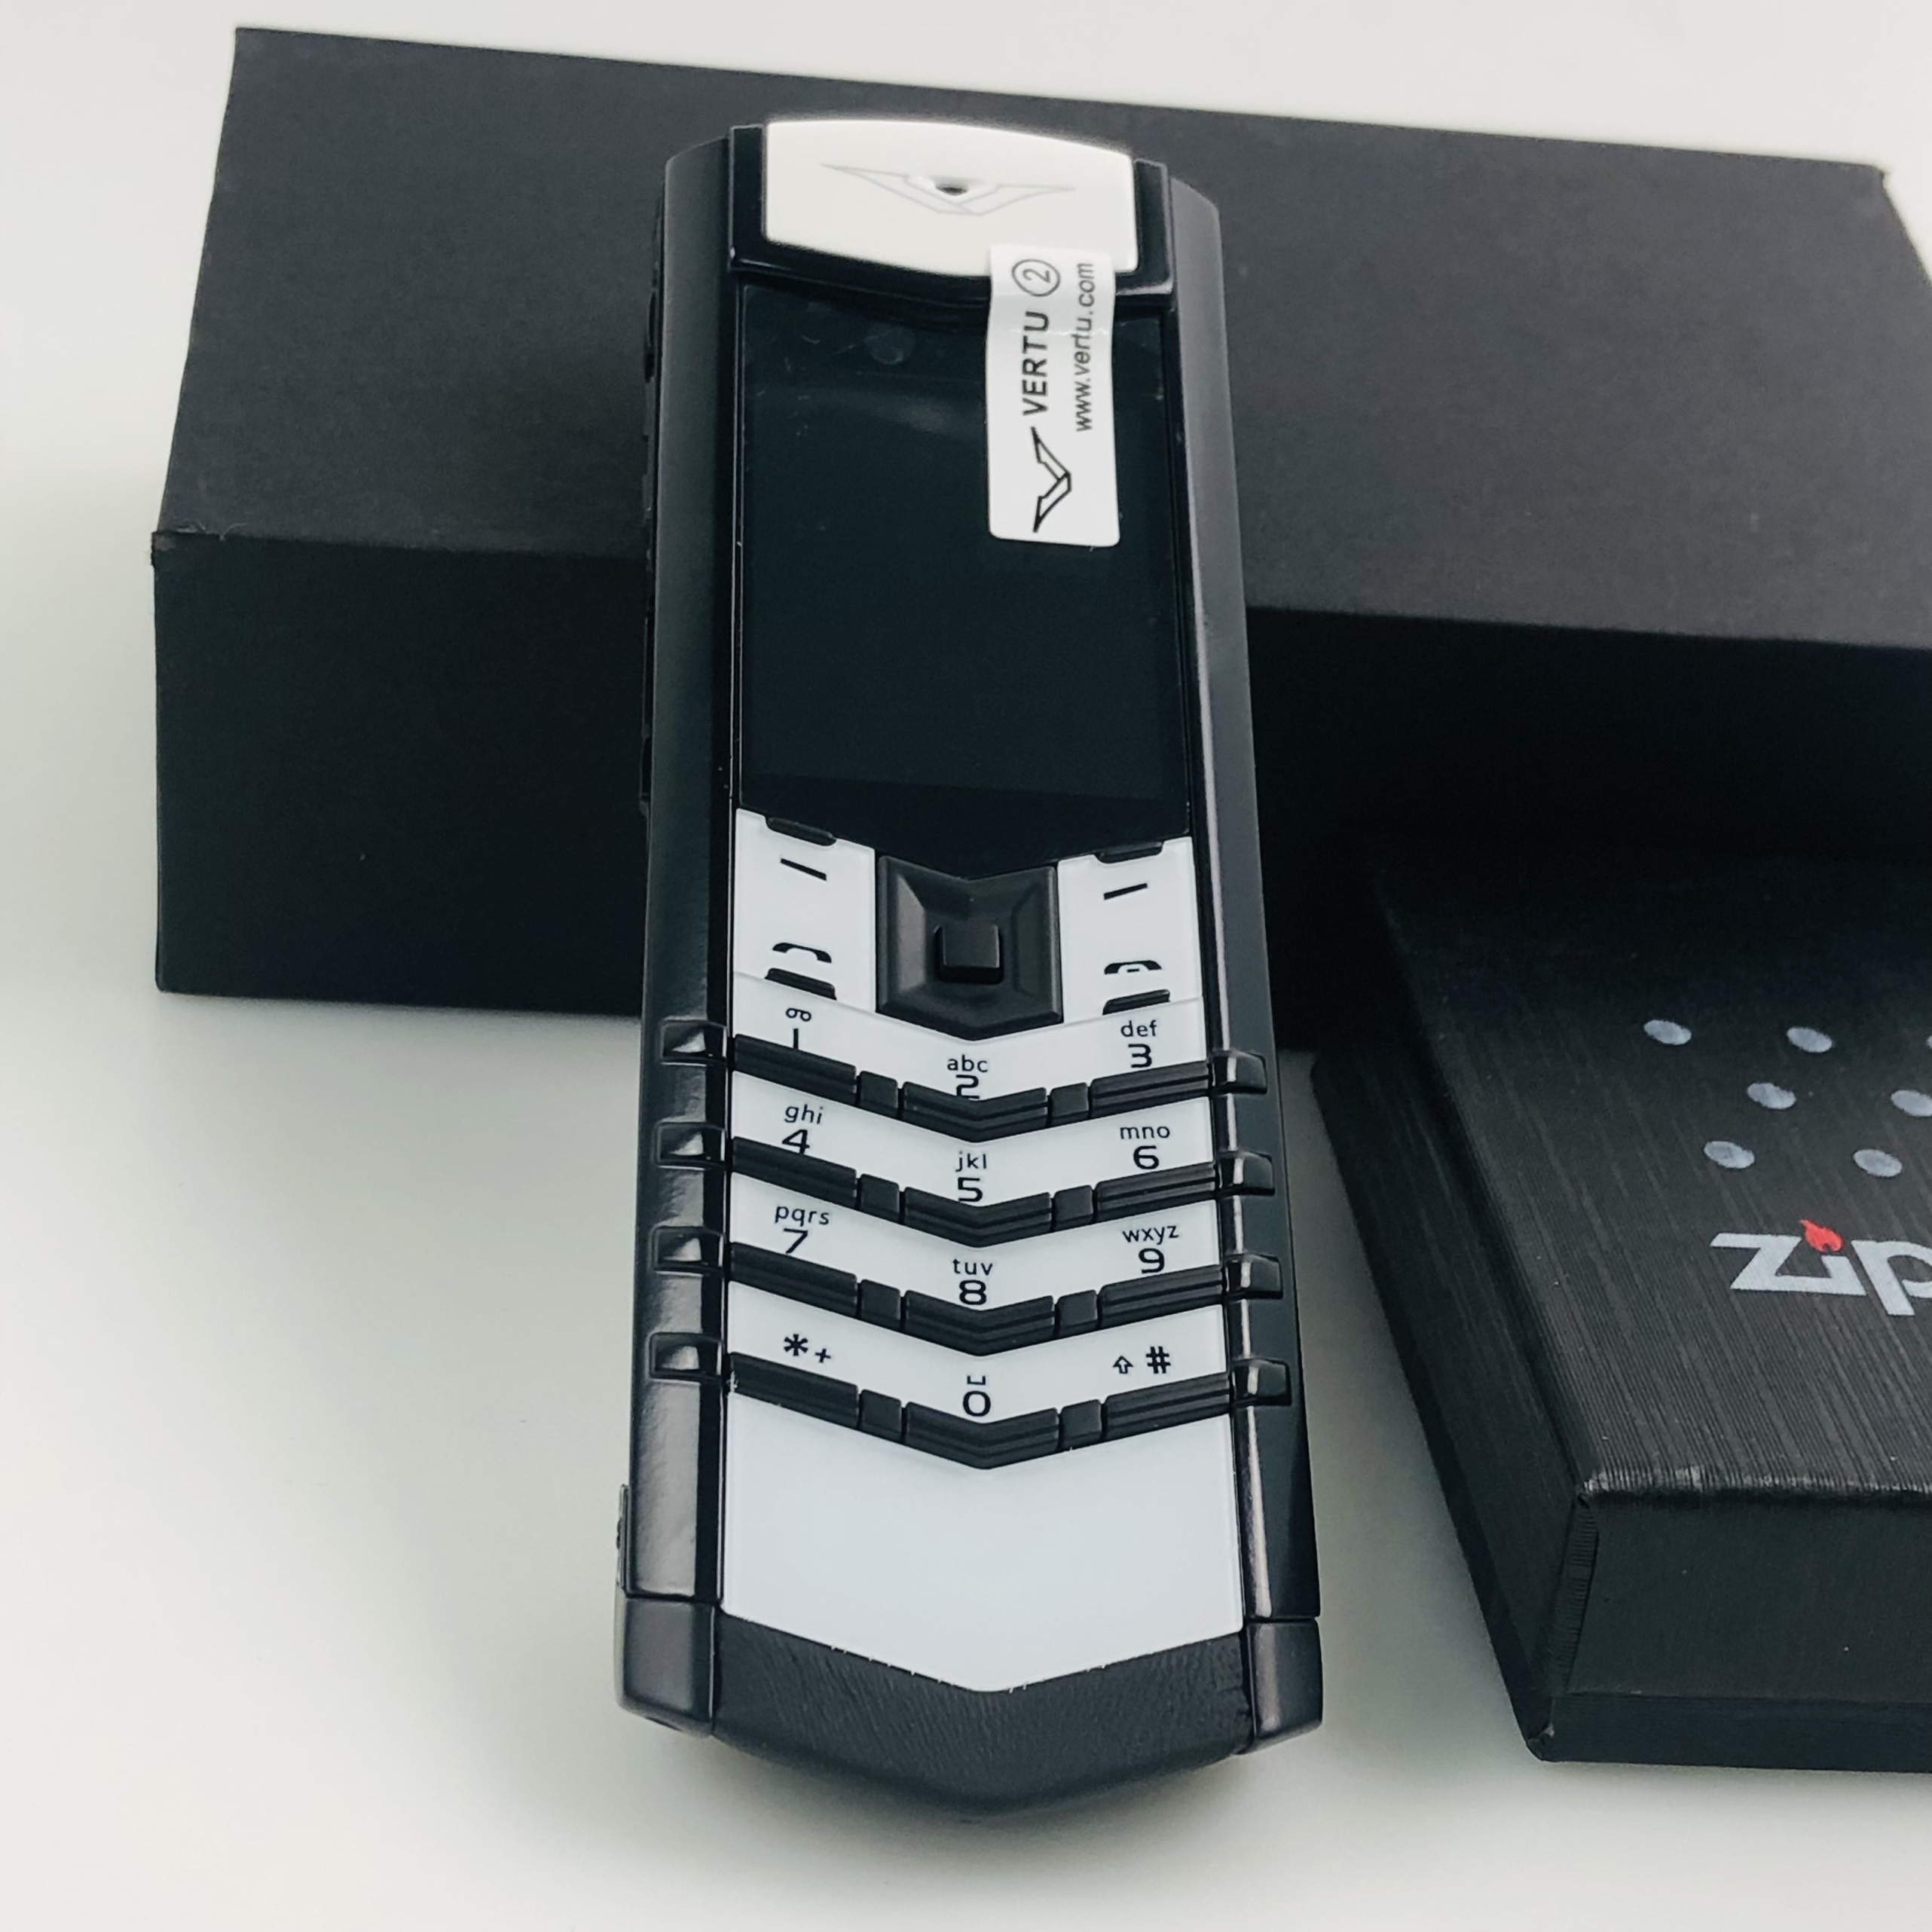 Điện thoại vetu siêu sang siêu đẳng cấp tặng kèm zippo điện thoại vertu được làm từ hợp kim nguyên khối giá rẻ sắc nét - điện thoại vetu giá rẻ điện thoại vertu-dien thoai gia re 2 sim vetu